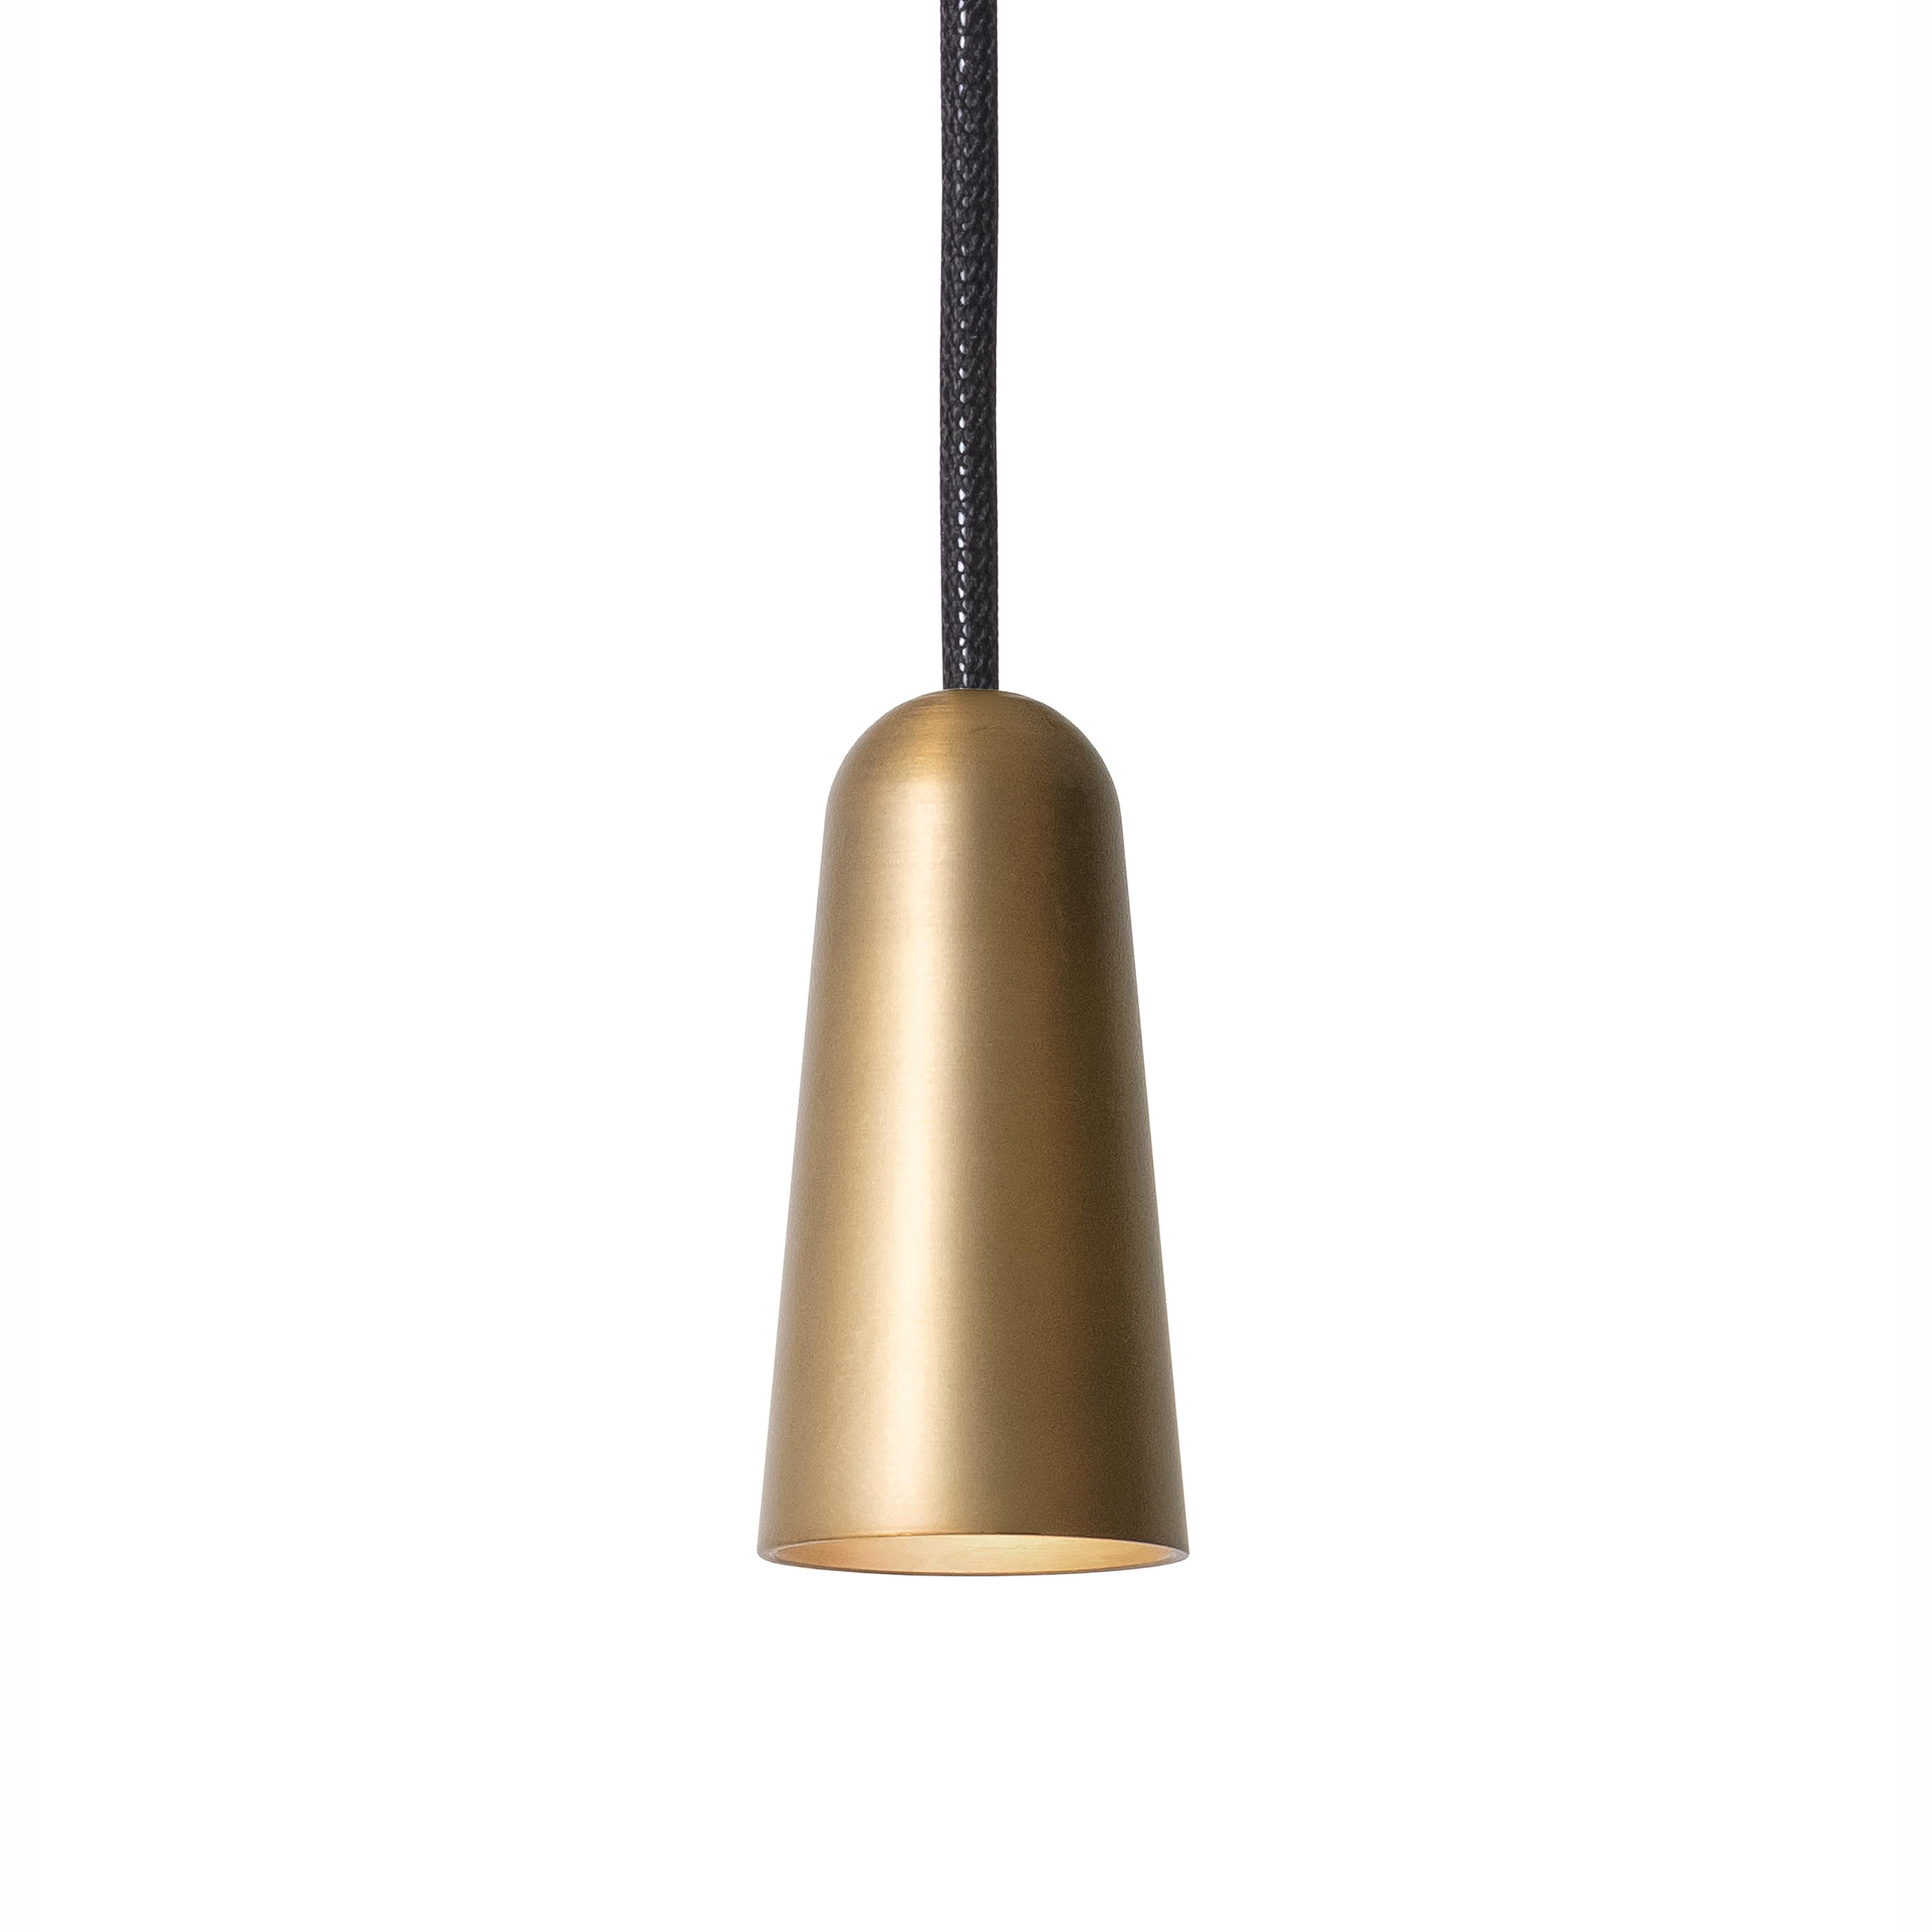 Henrik Tengler 3493-6 Massiv Lamp by Konsthantverk In New Condition For Sale In Barcelona, Barcelona